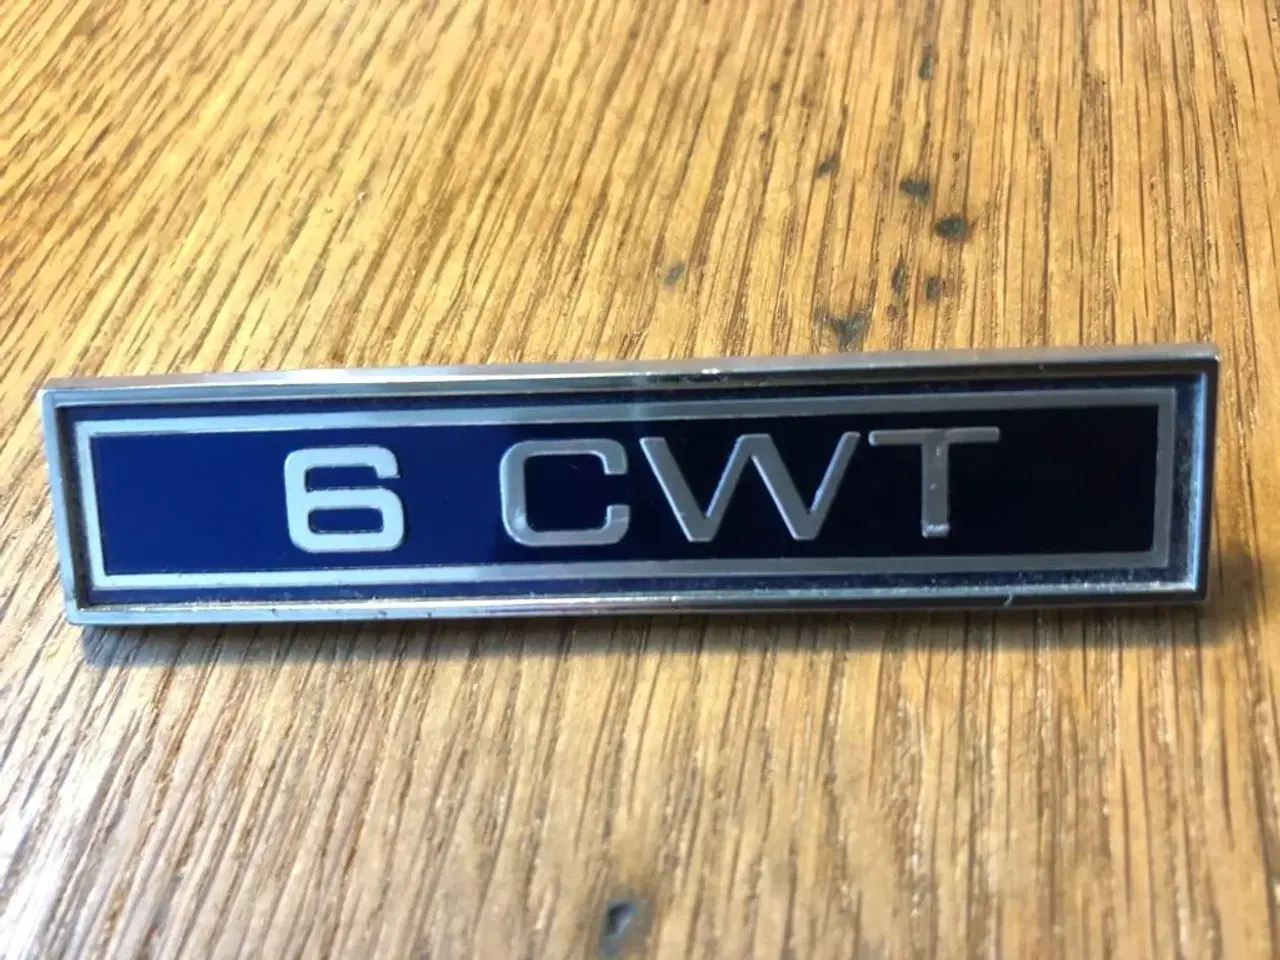 Billede 1 - Ford 6 CWT emblem